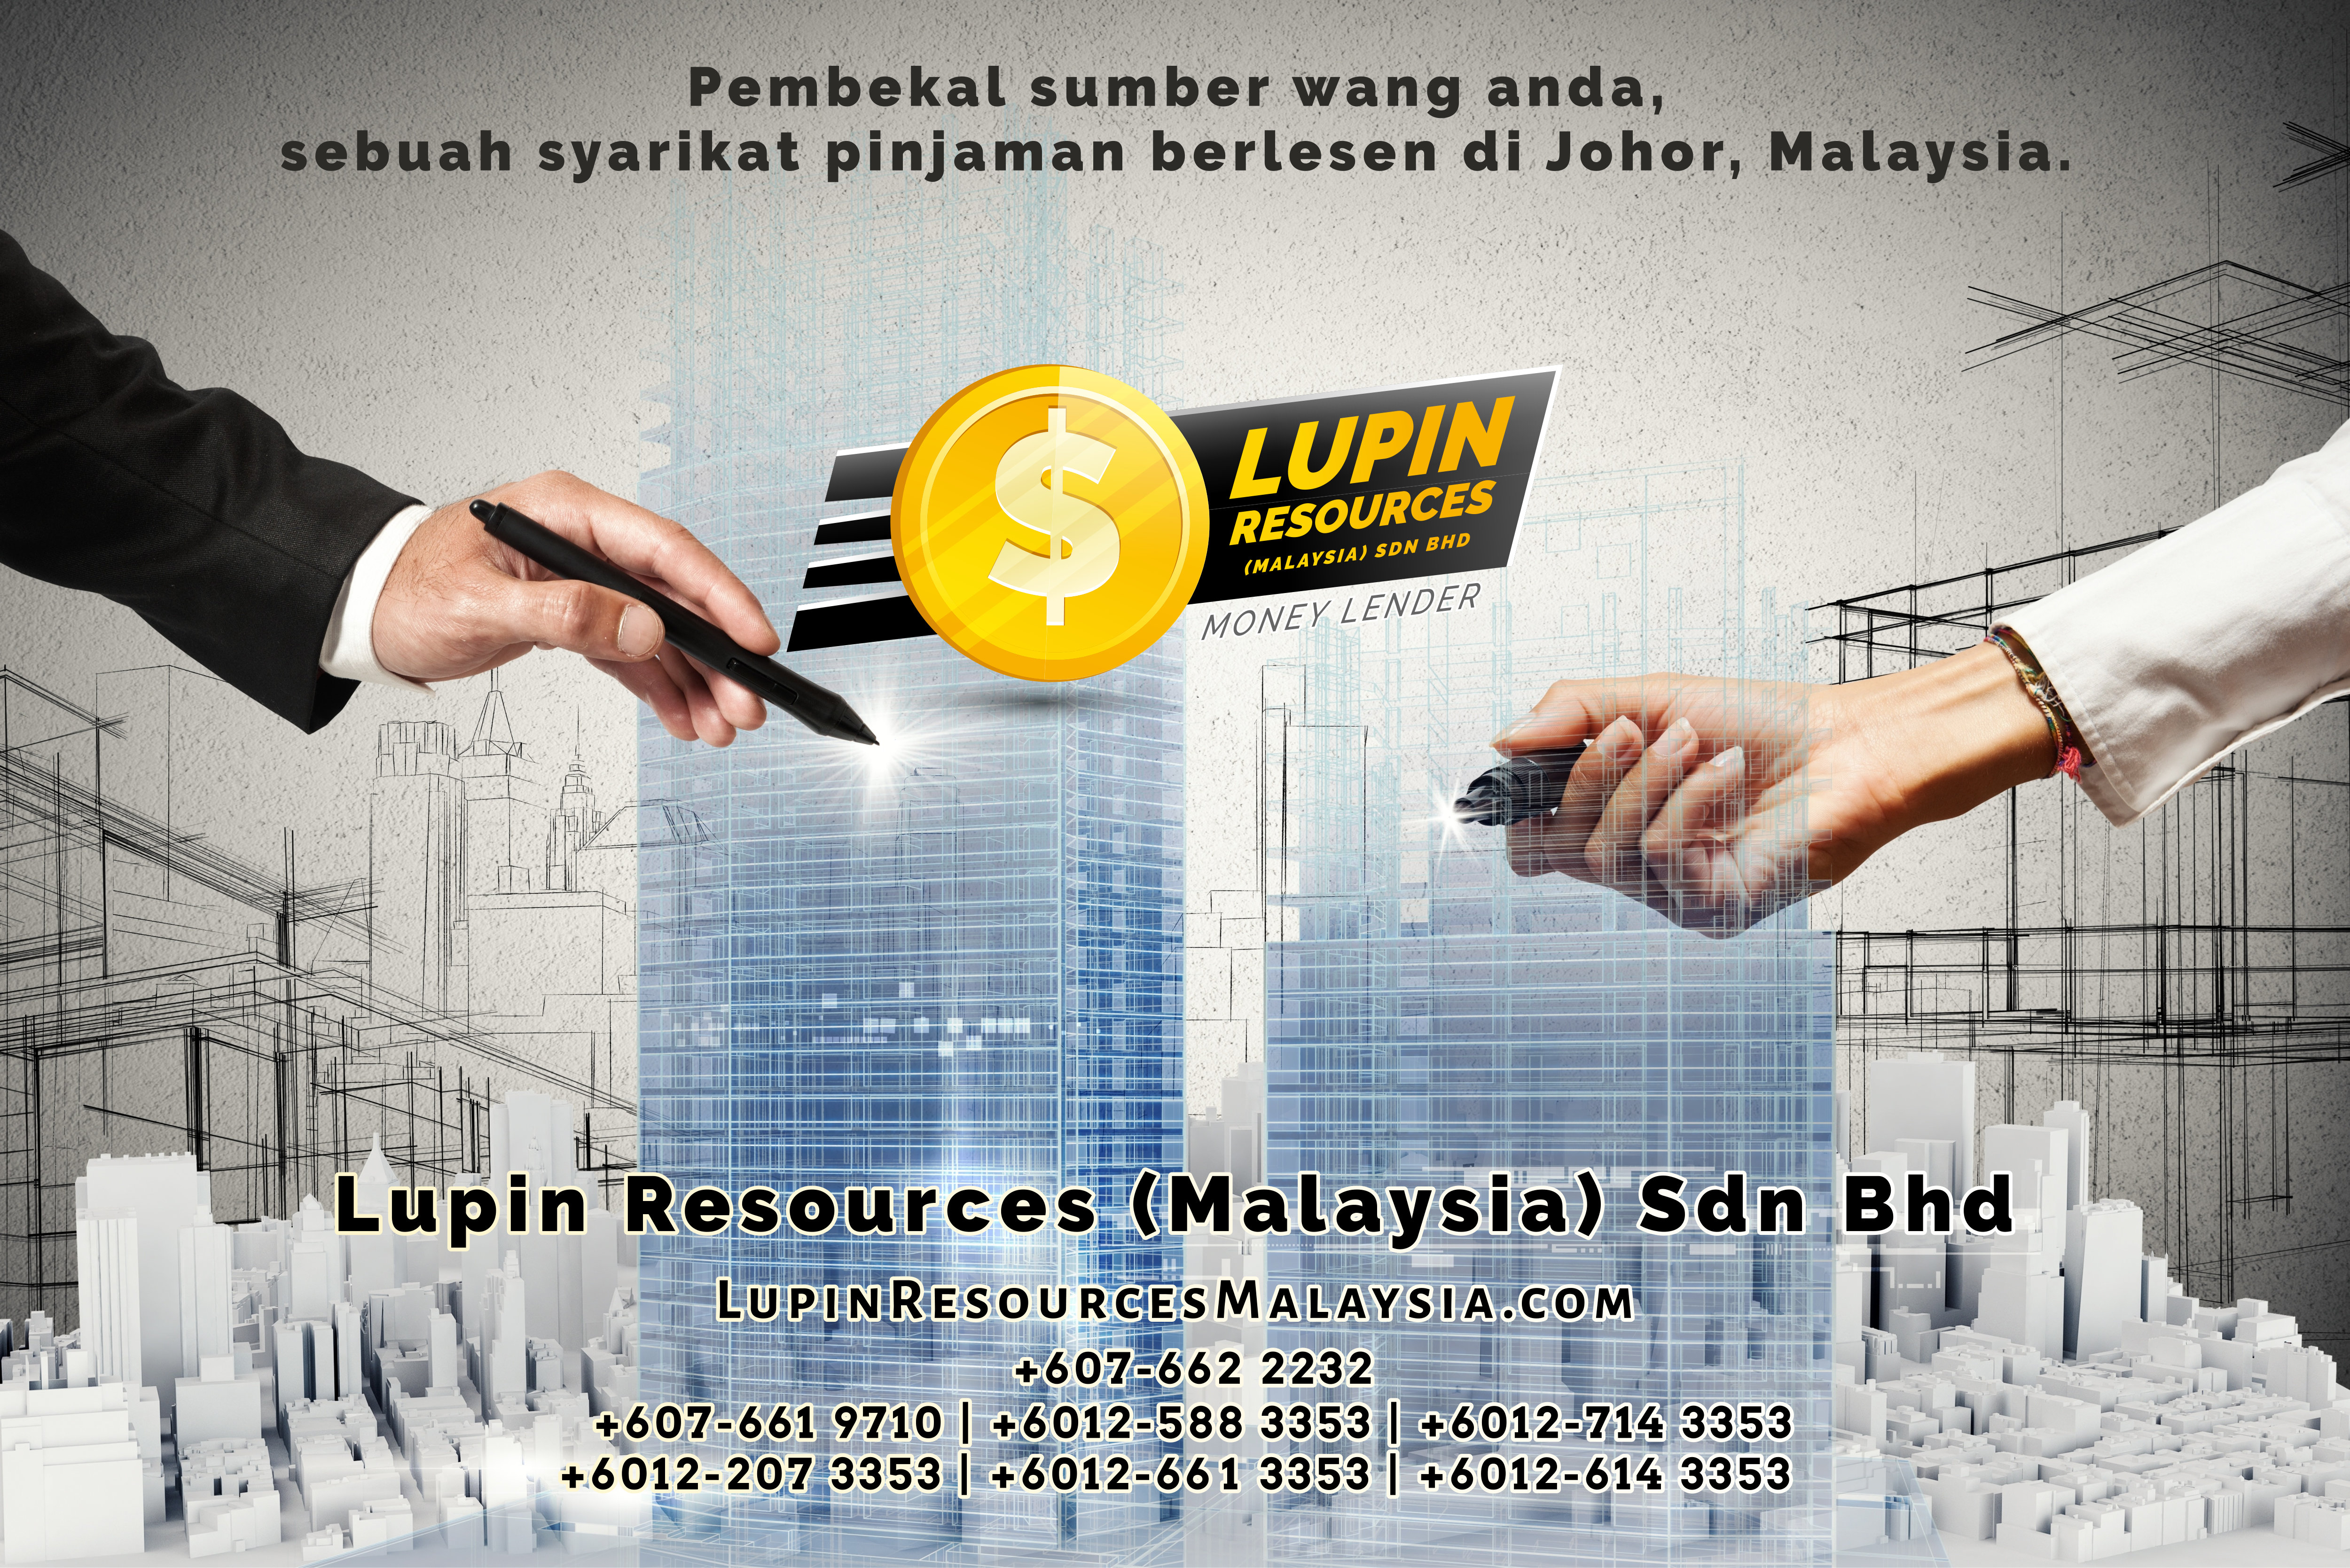 Johor Syarikat Pinjaman Berlesen Lupin Resources Malaysia SDN BHD Pembekal Sumber Wang Anda Kulai Johor Bahru Johor Malaysia Pinjaman Perniagaan Pinjaman Peribadi A01-48